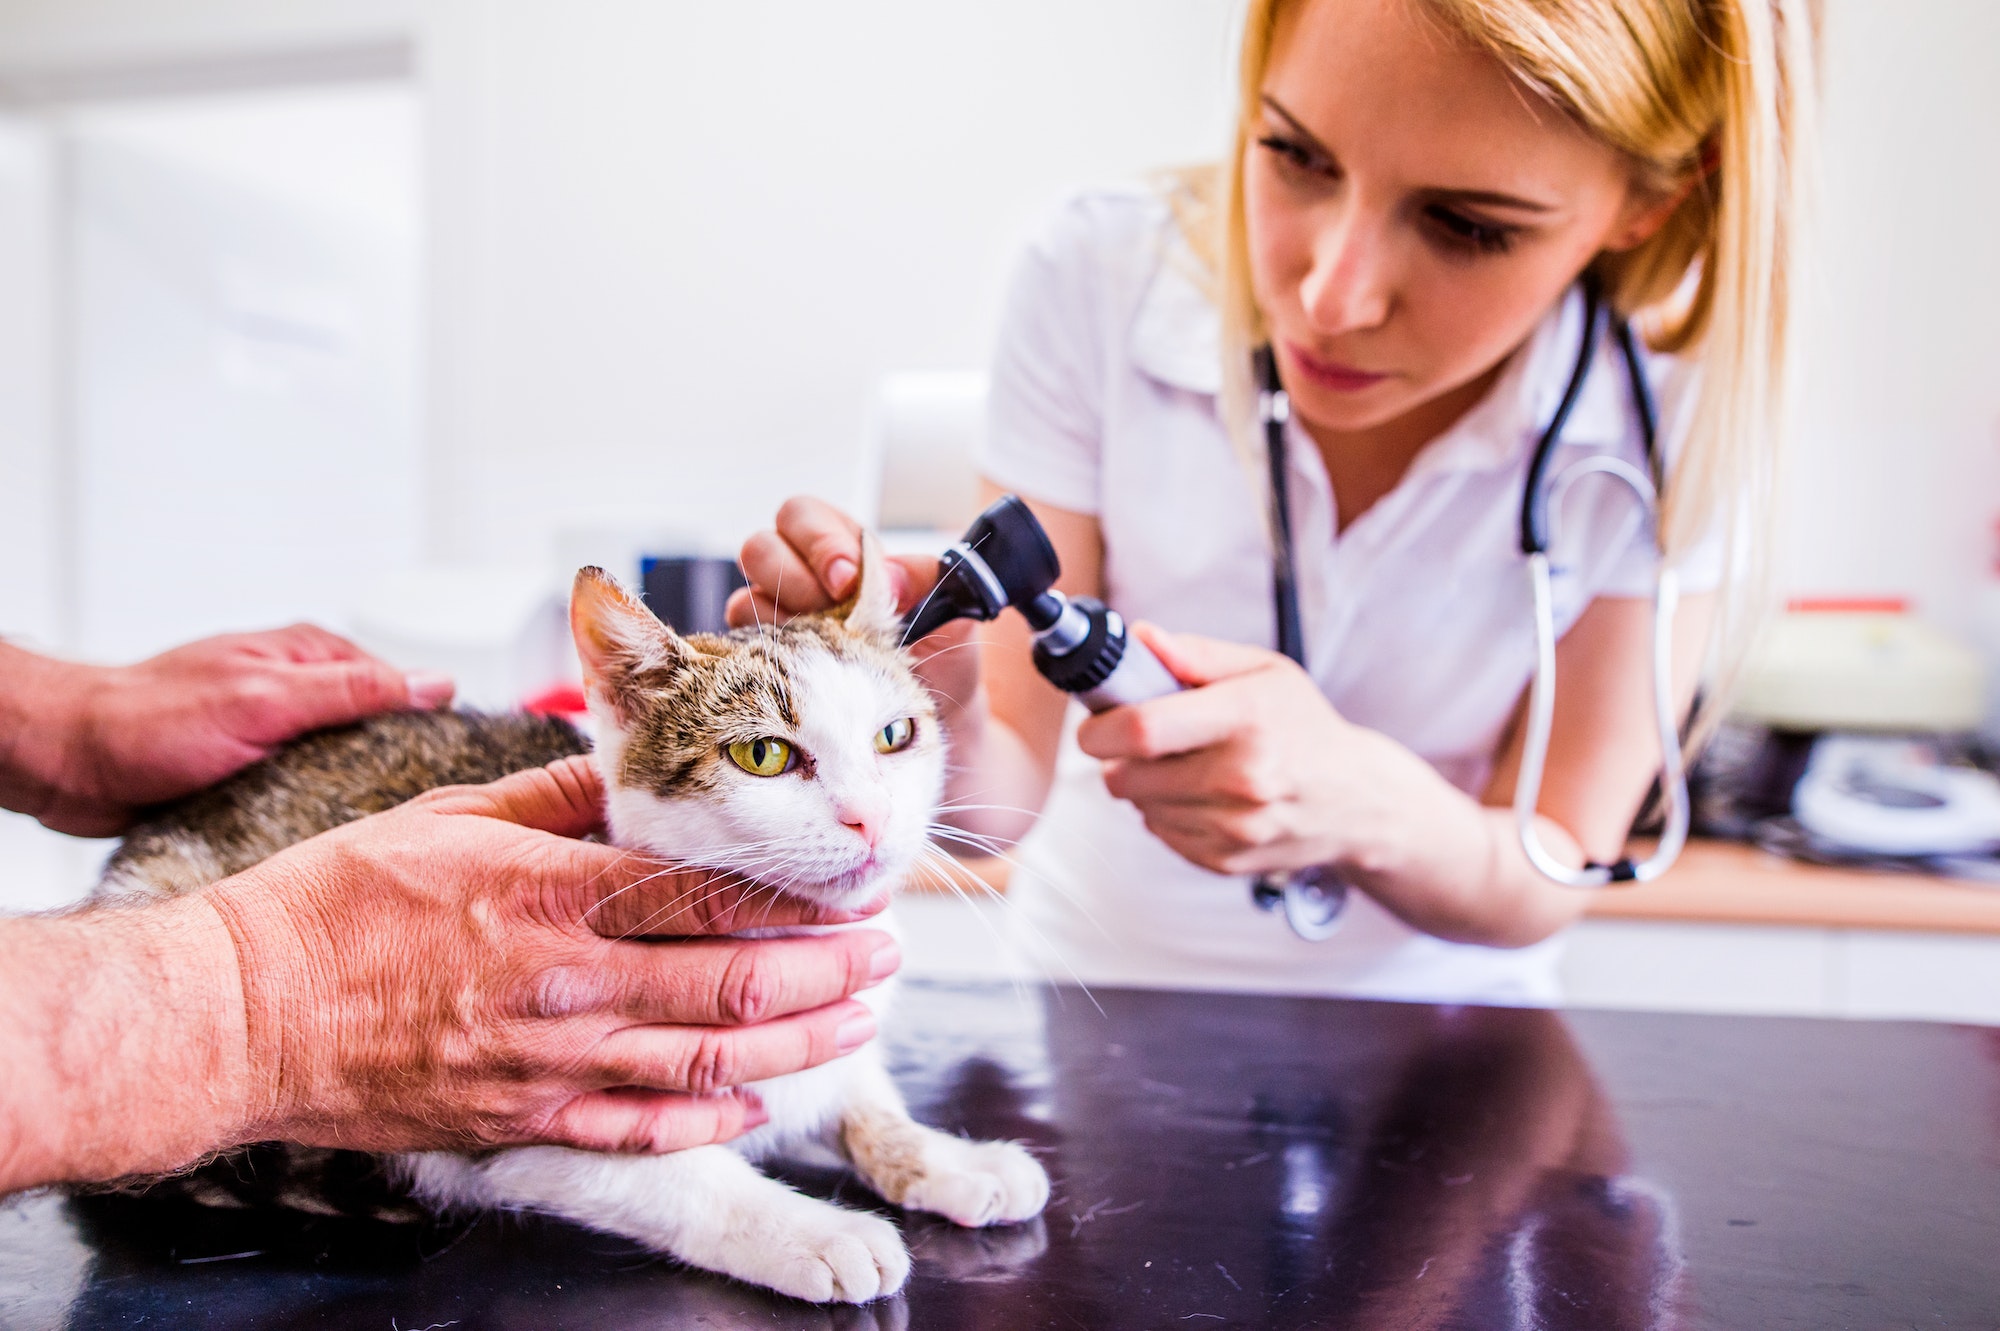 Cat during having otoscope examination at veterinary clinic.